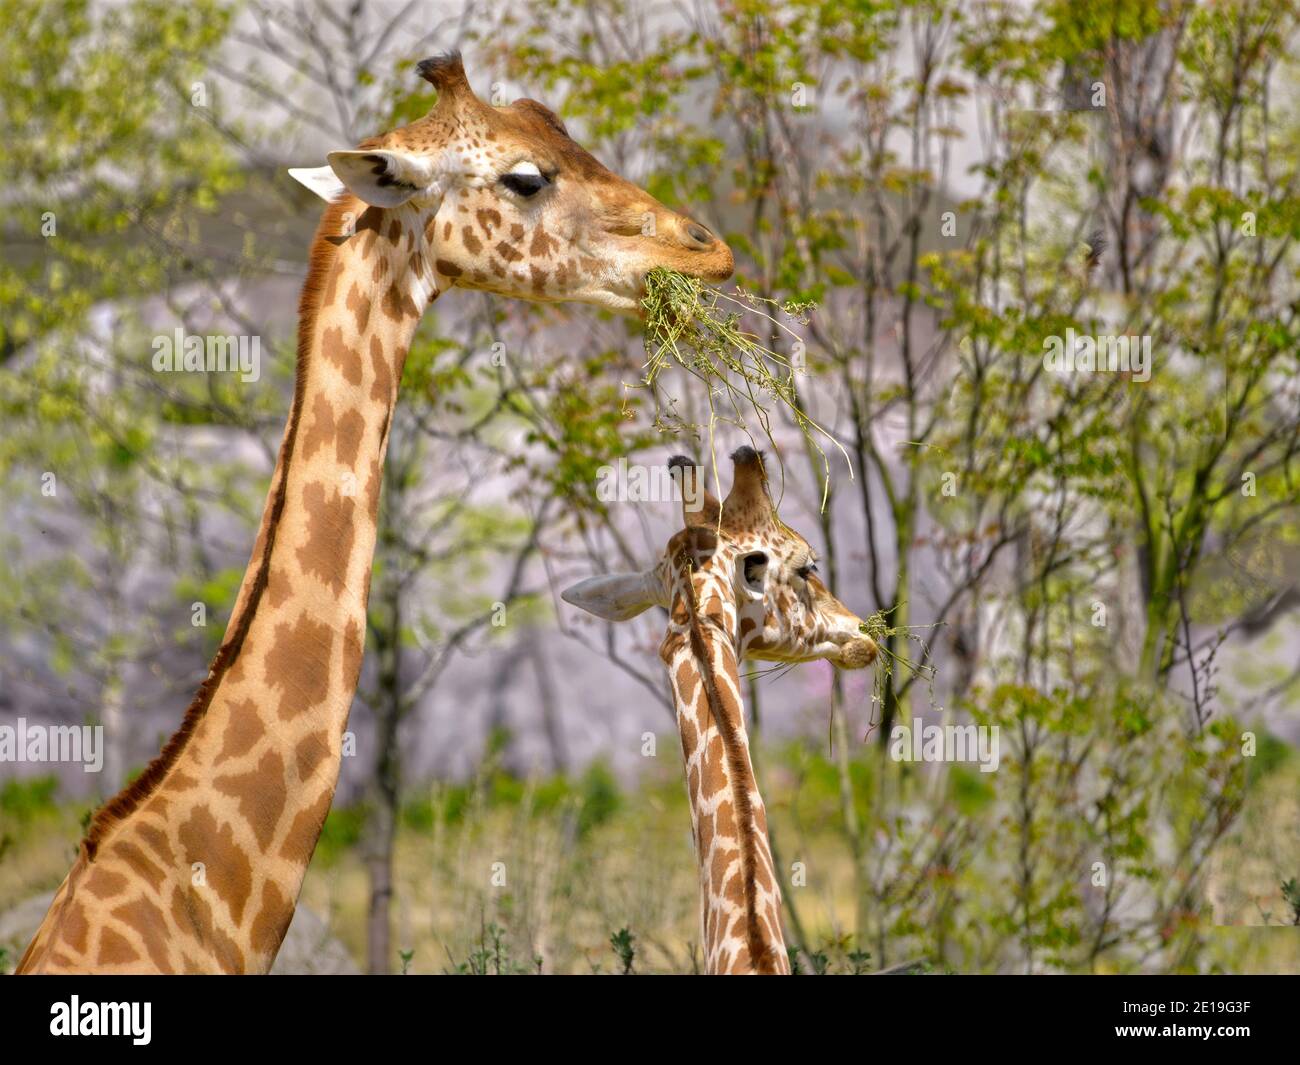 Closeup of two giraffes (Giraffa camelopardalis) eating grass Stock Photo